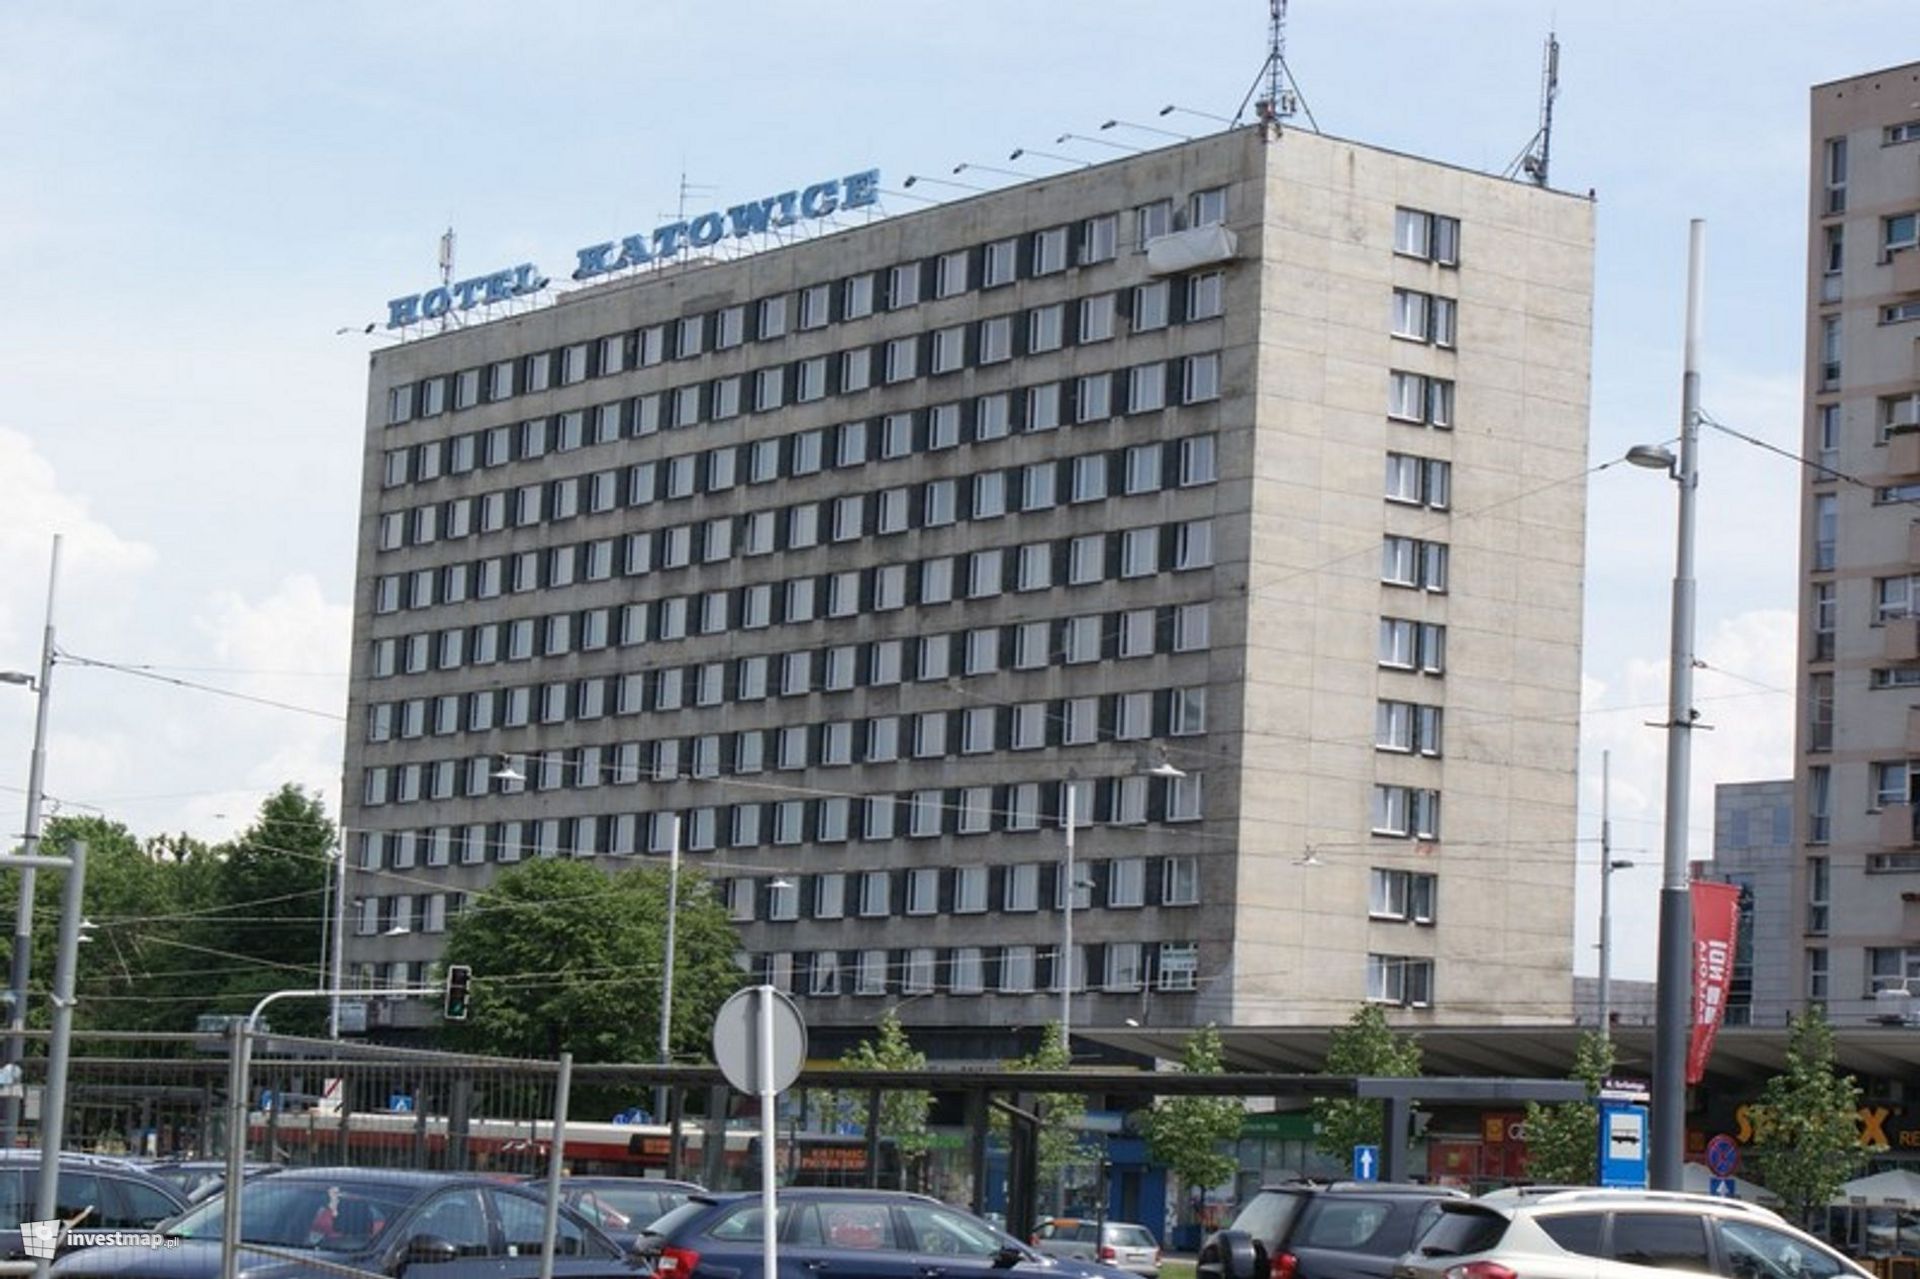 Trwa duża modernizacja Hotelu Katowice. Będzie po niej funkcjonował pod marką voco 